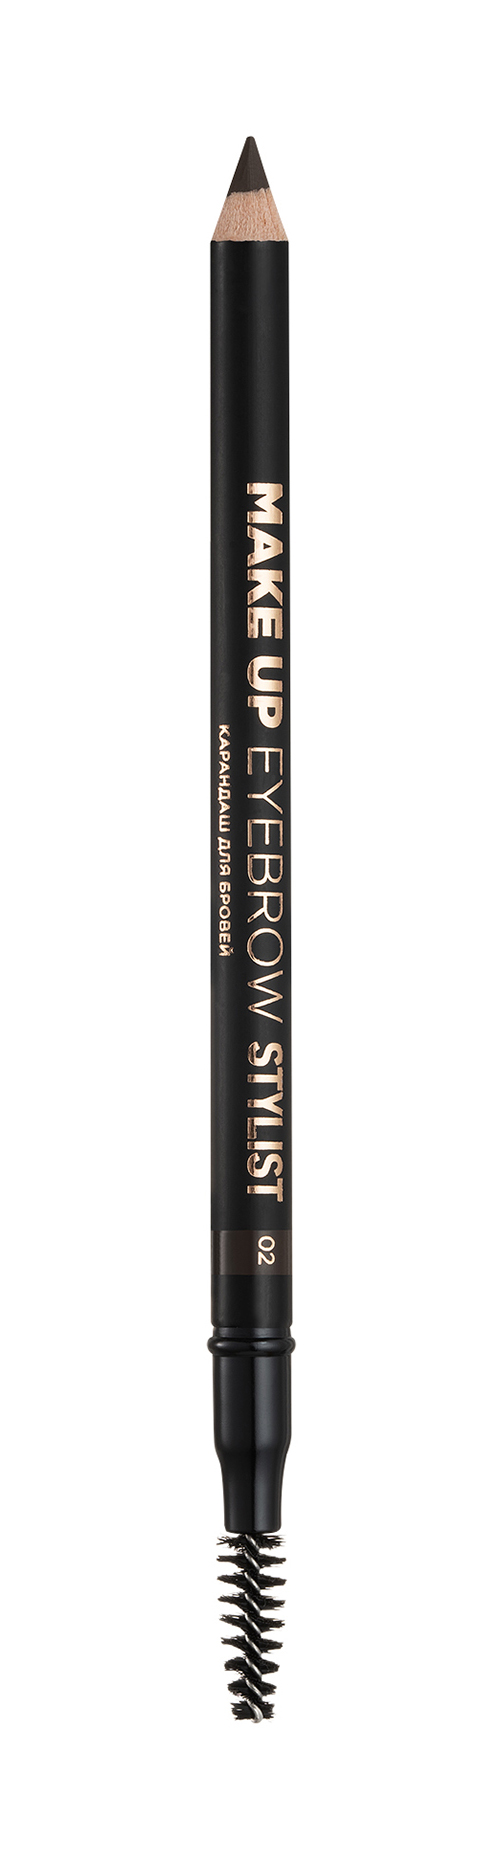 Карандаш для бровей Eva Mosaic Make up Eyebrow Stylist карандаш для глаз make up factory автоматический тон 06 коричневый 0 31 г